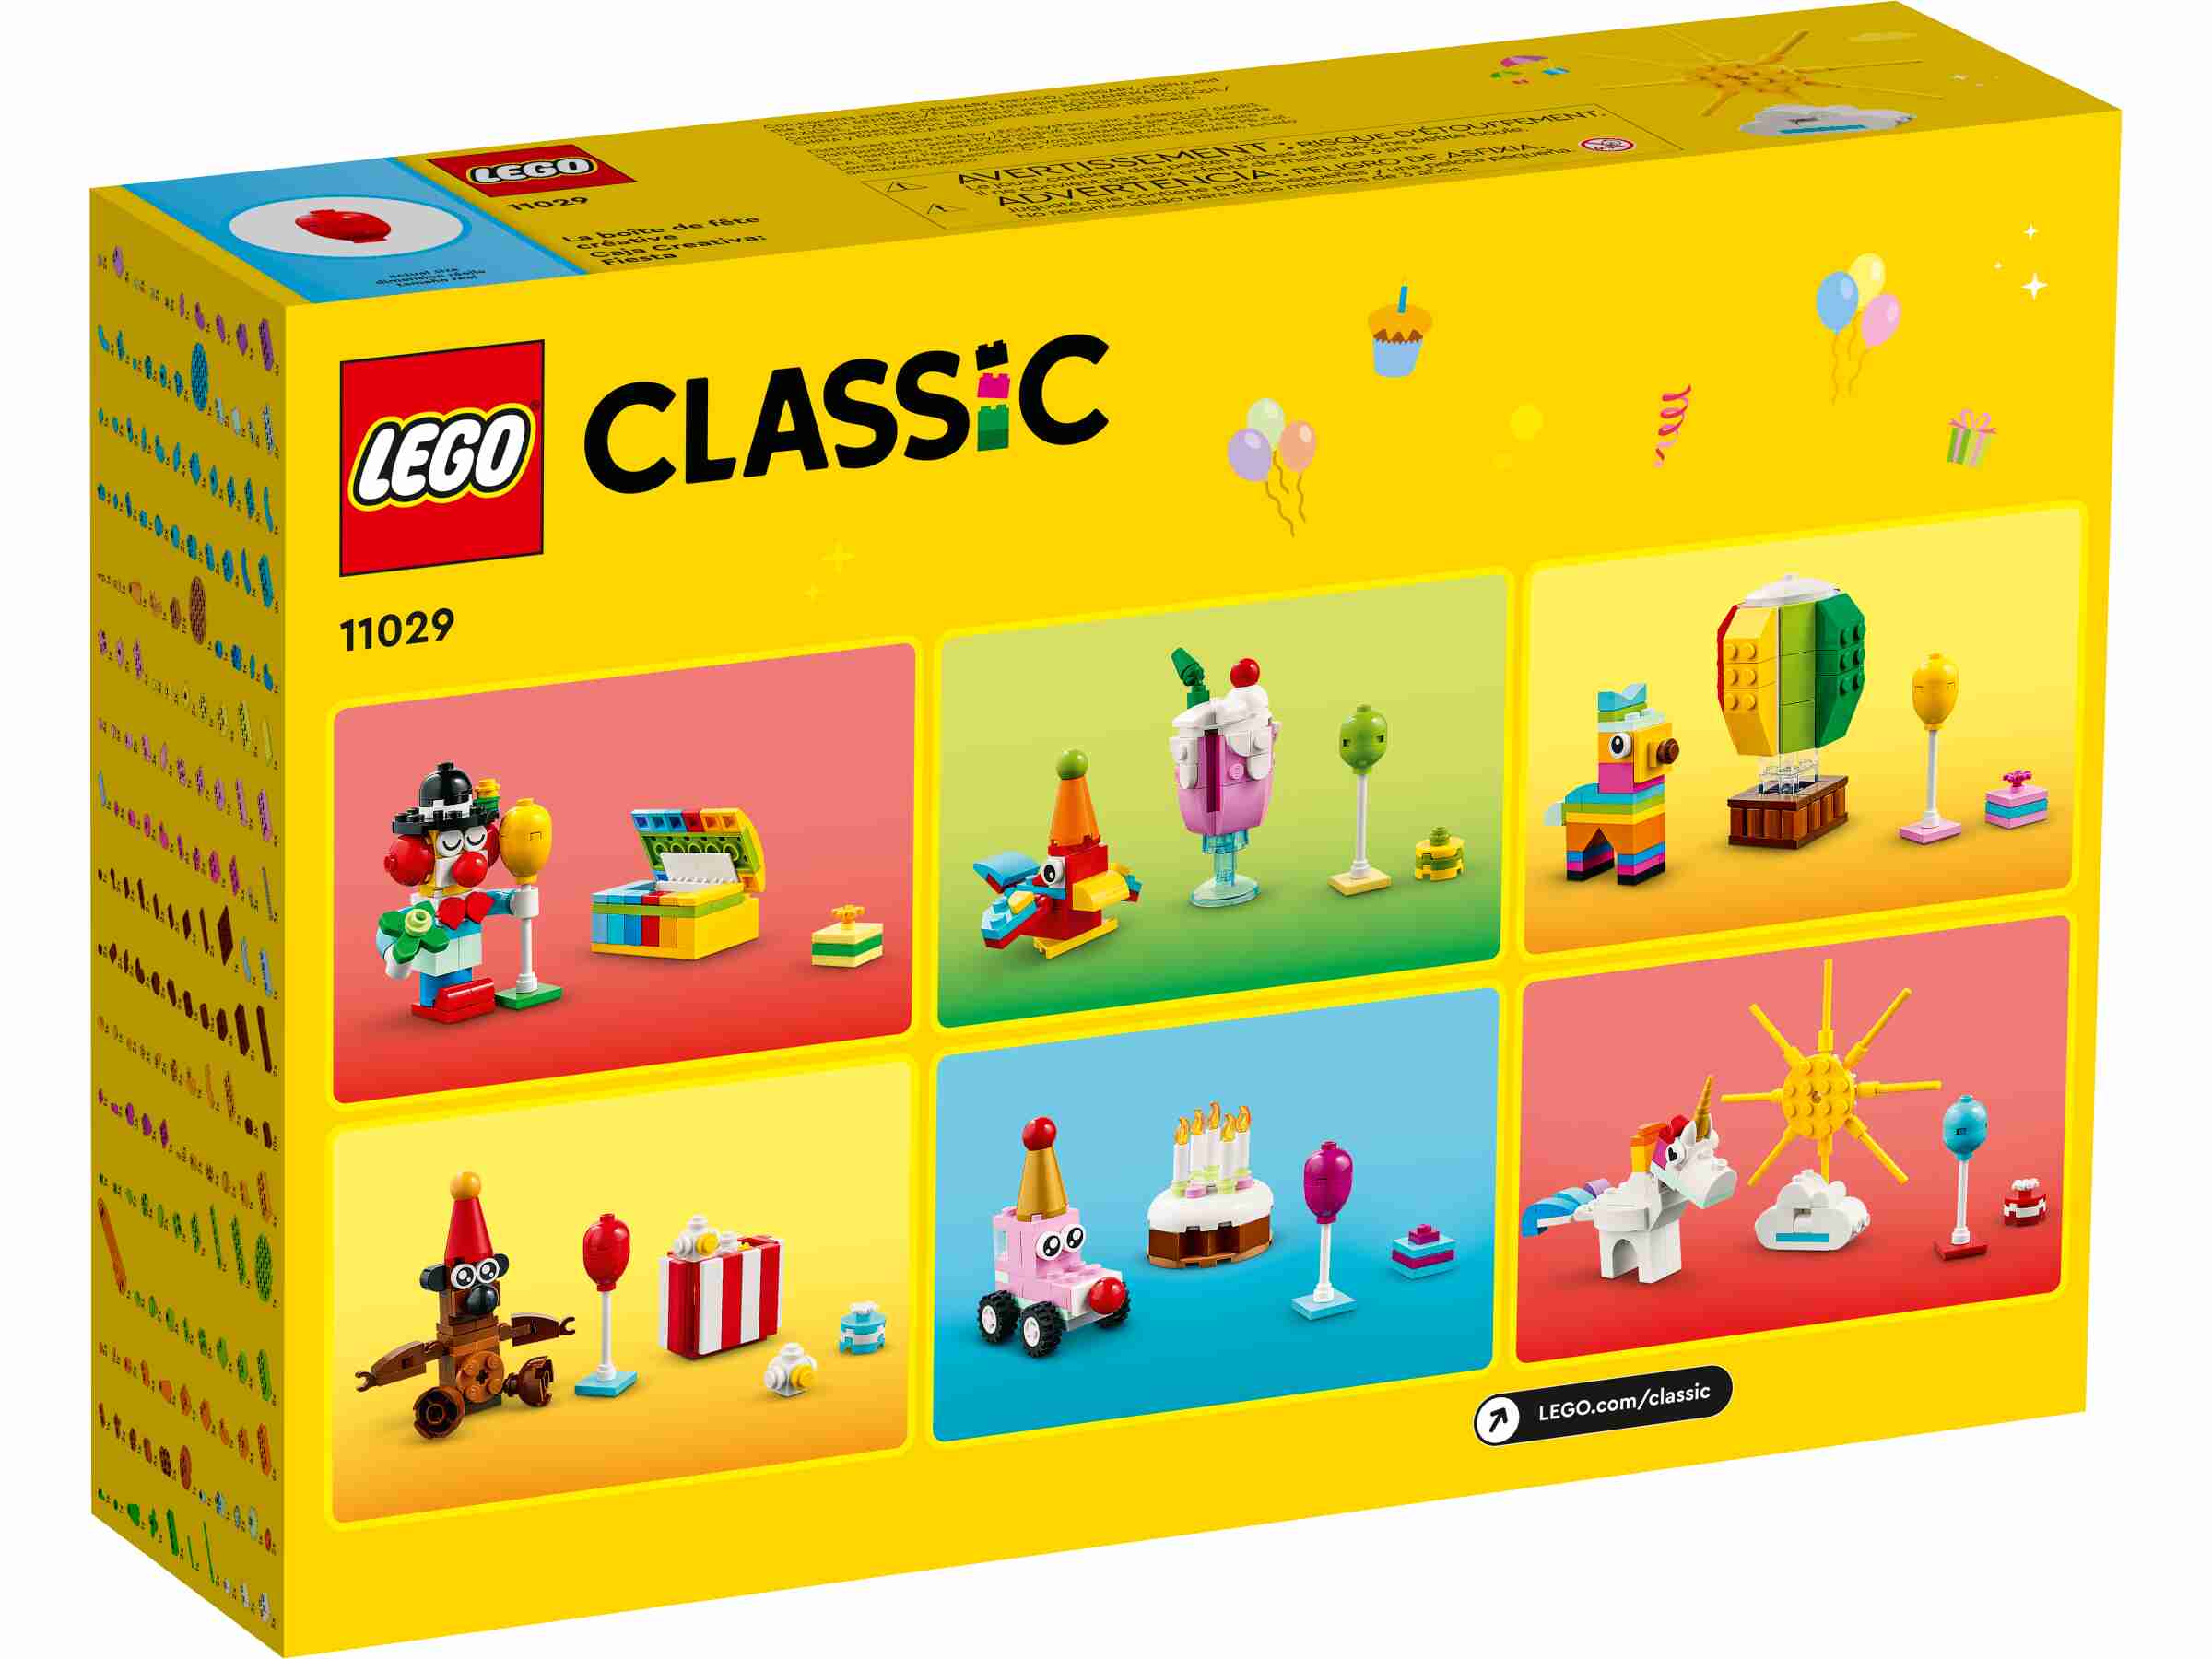 LEGO 11029 Classic Party Kreativ-Bauset, 900 Teile für gemeinsame Bauaktivitäten